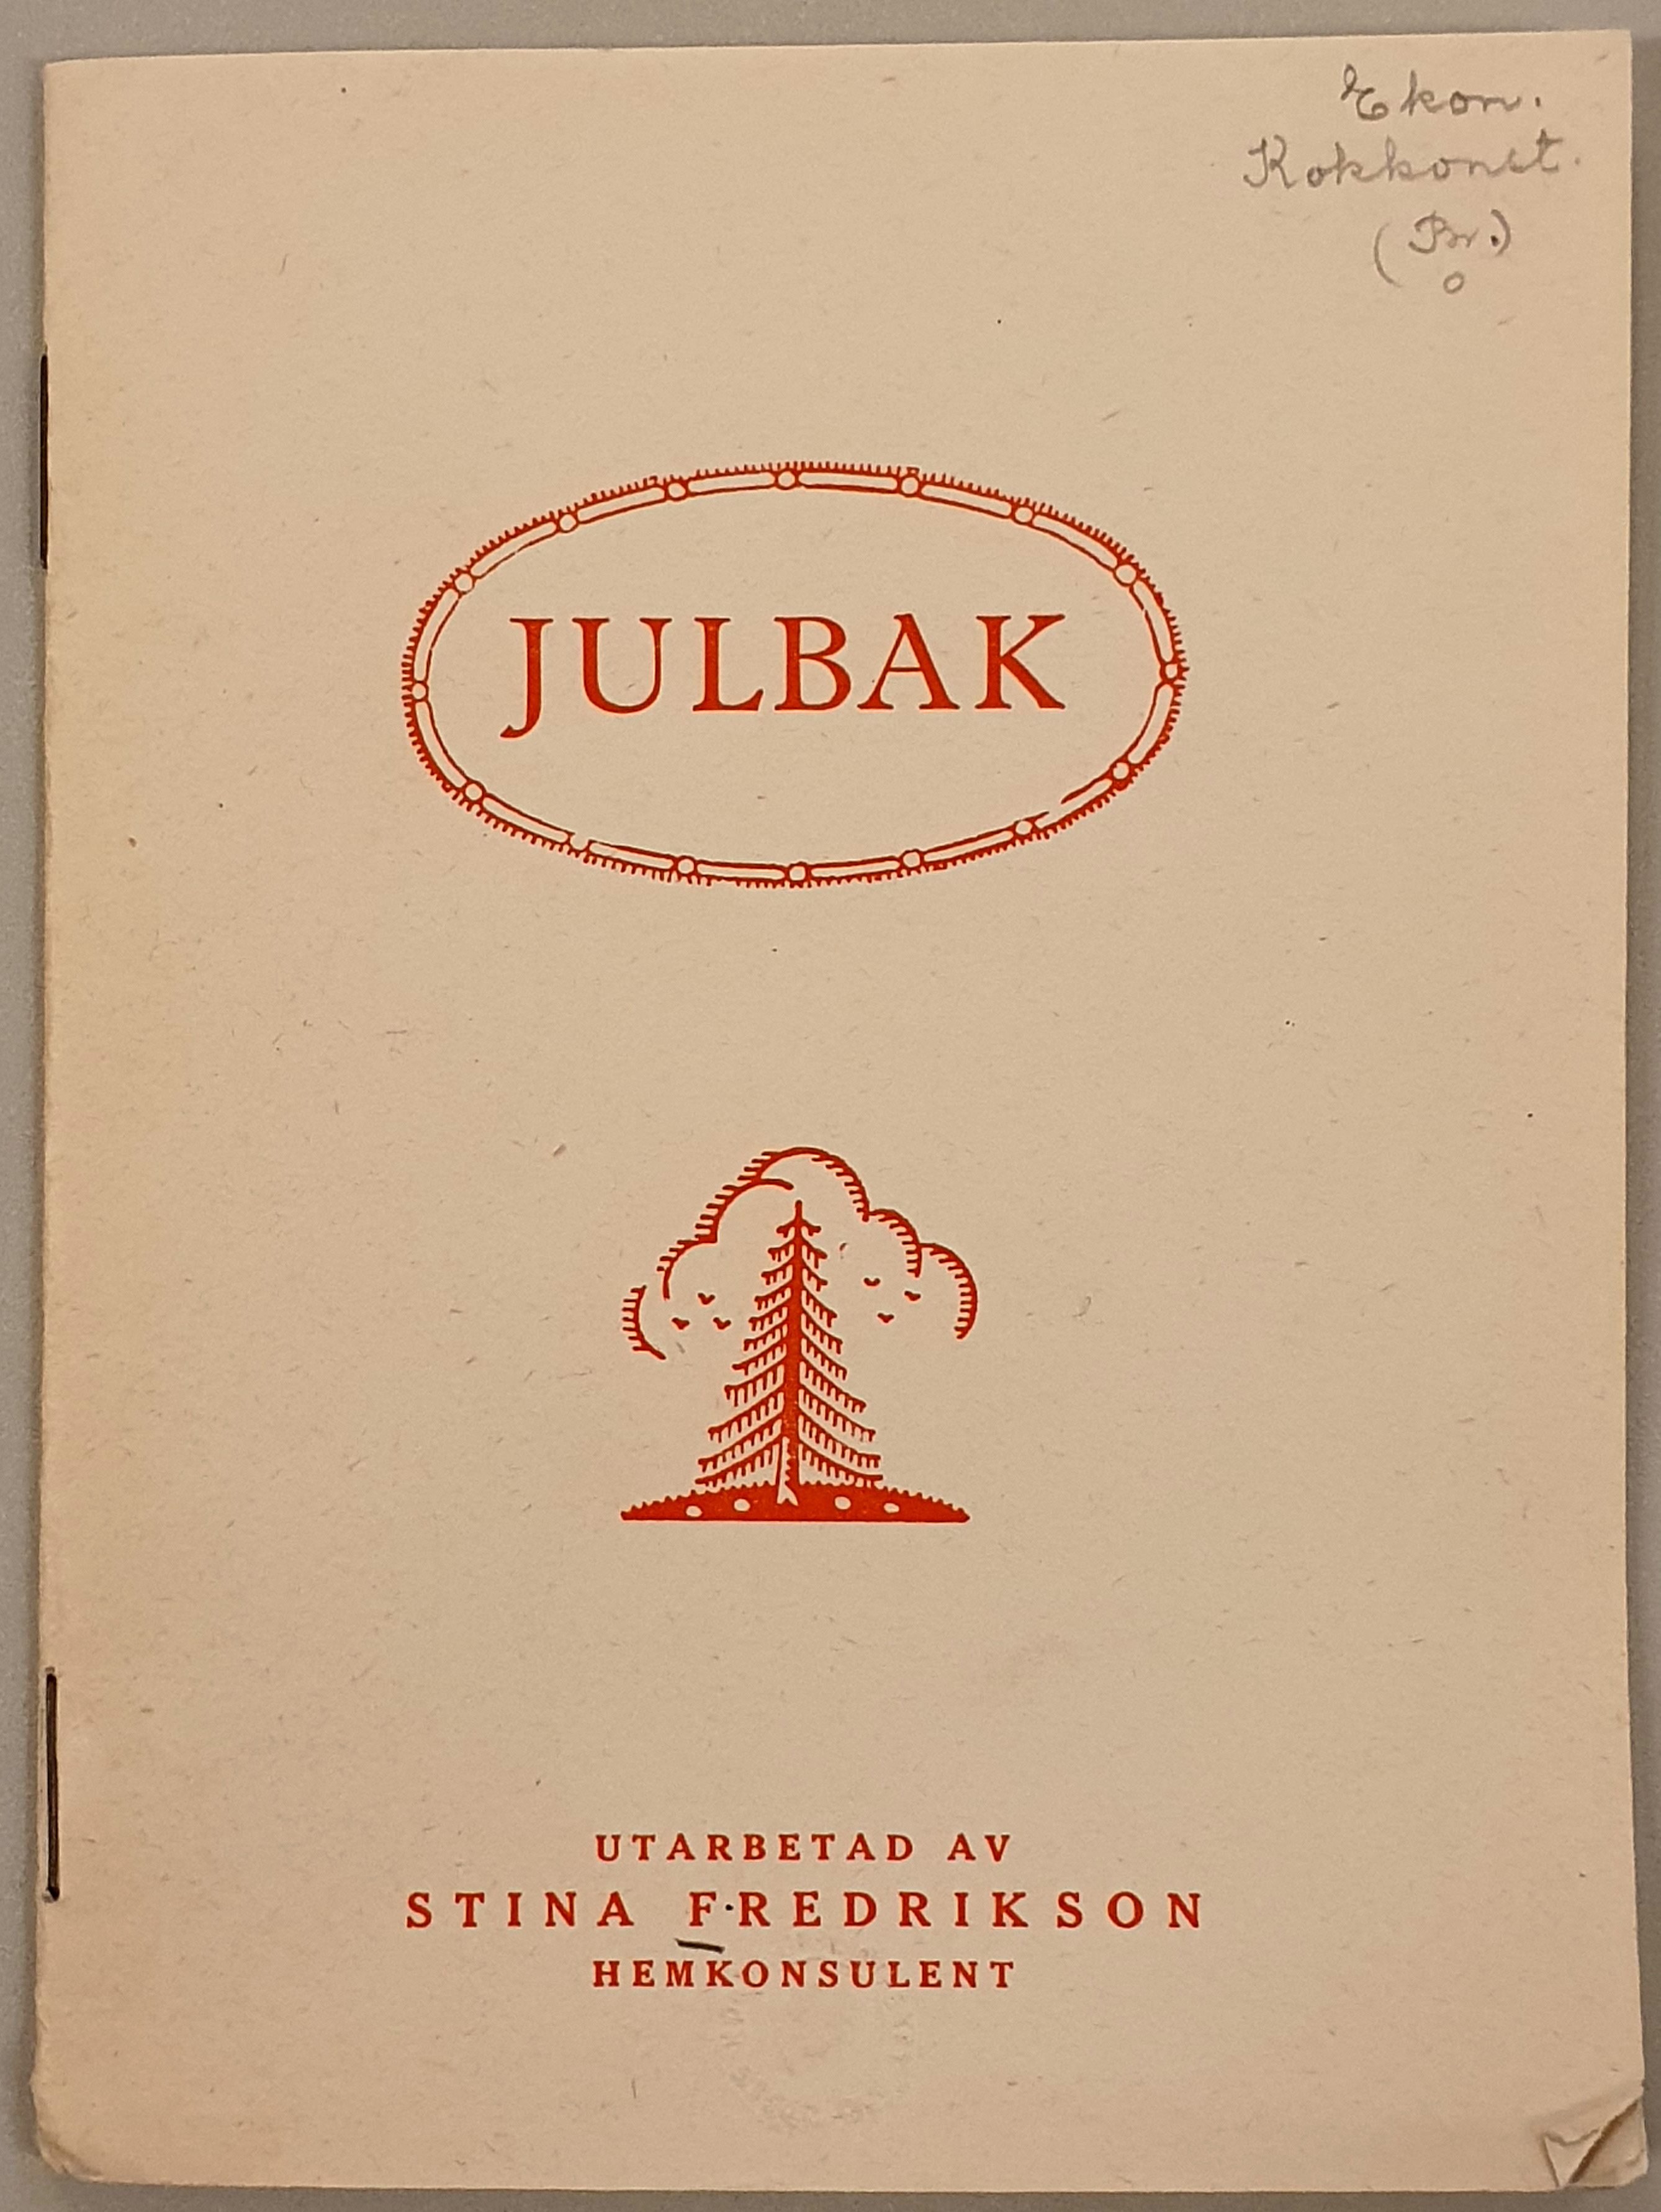 Foto av broschyr om julbak från 1923. Broschyren har vitt omslag med röd text och bild, en stiliserad gran och himmel.